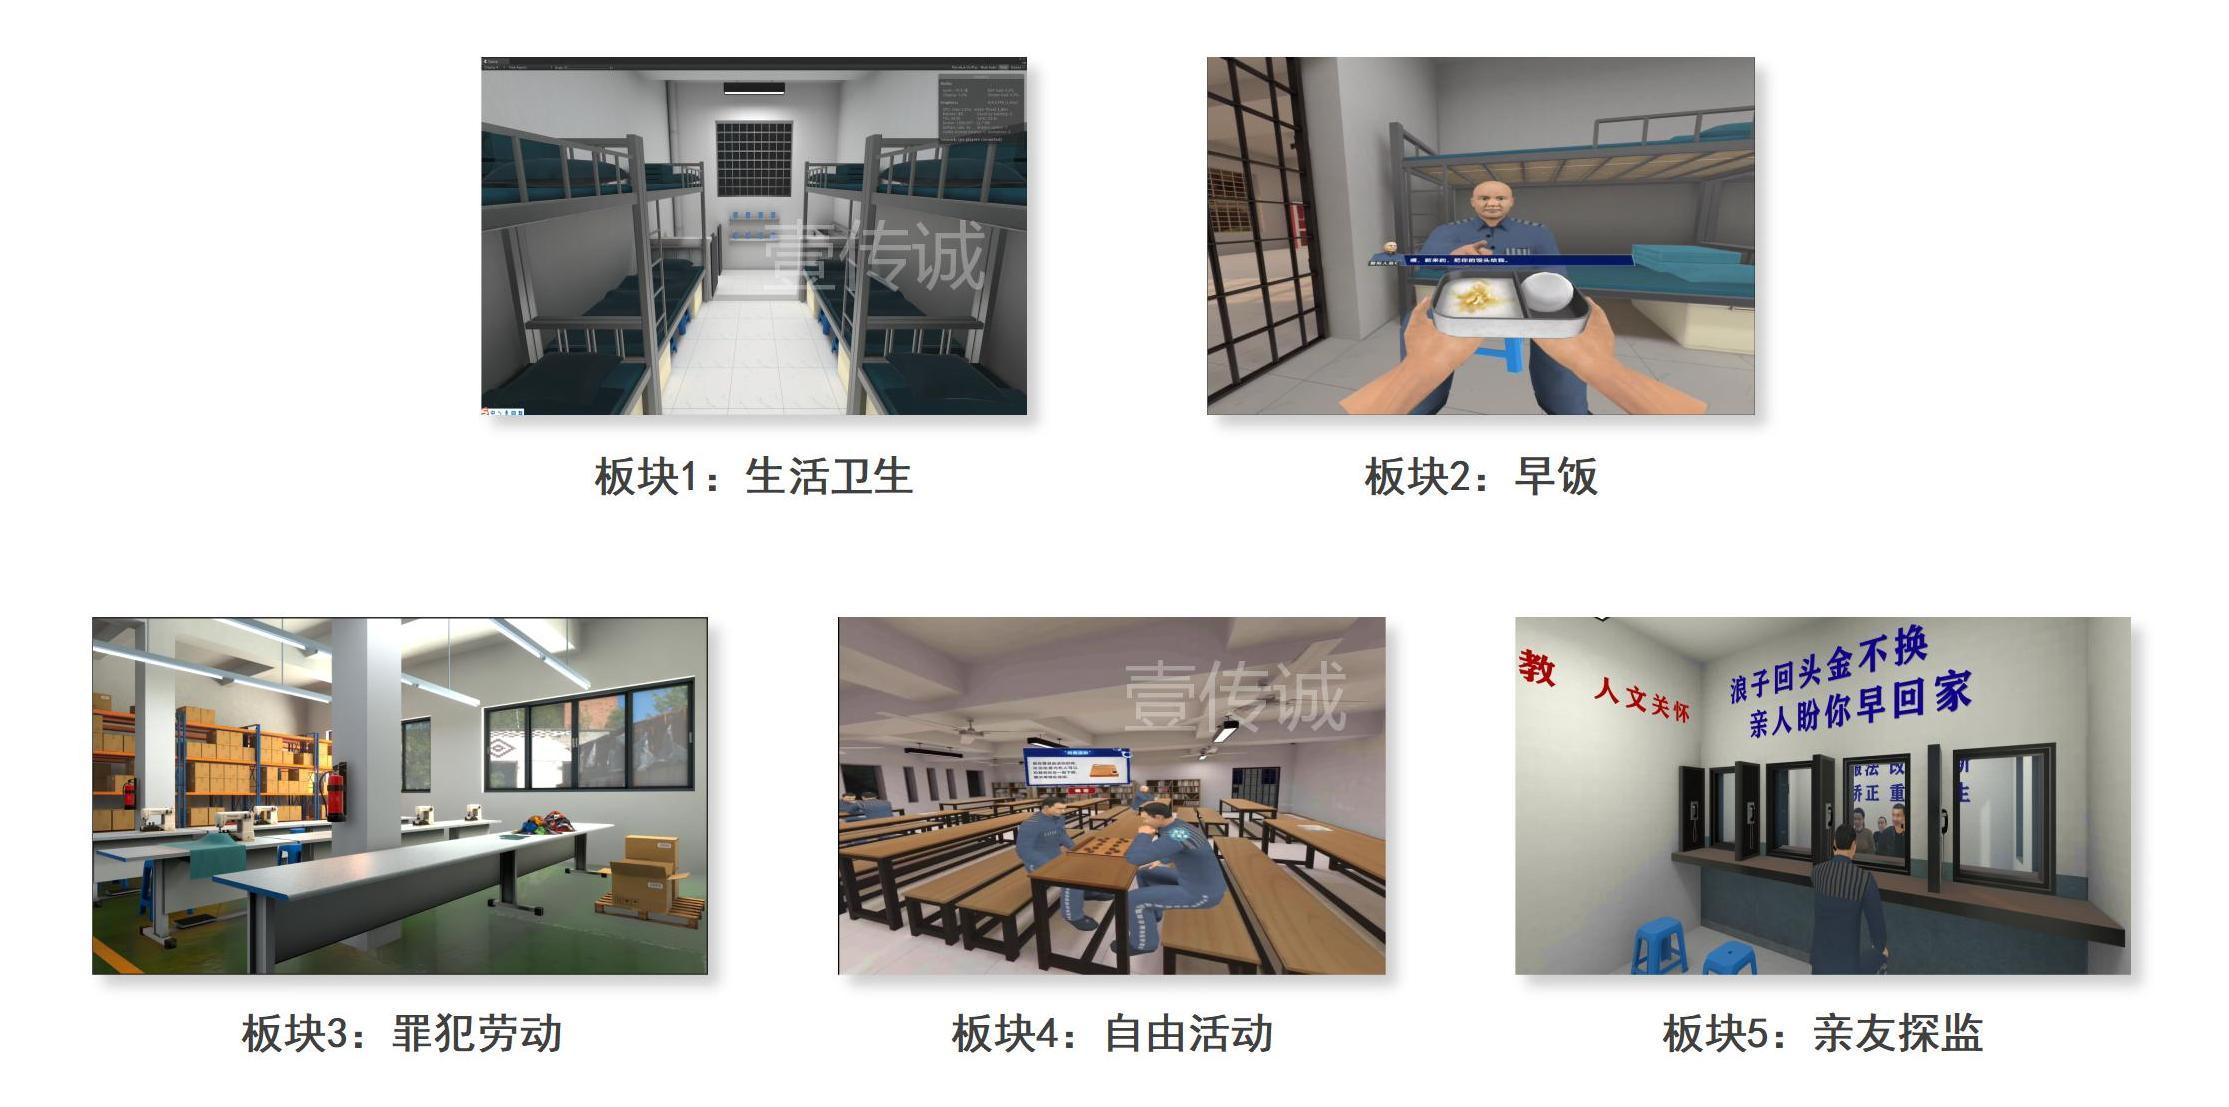 VR模拟监狱情景体验